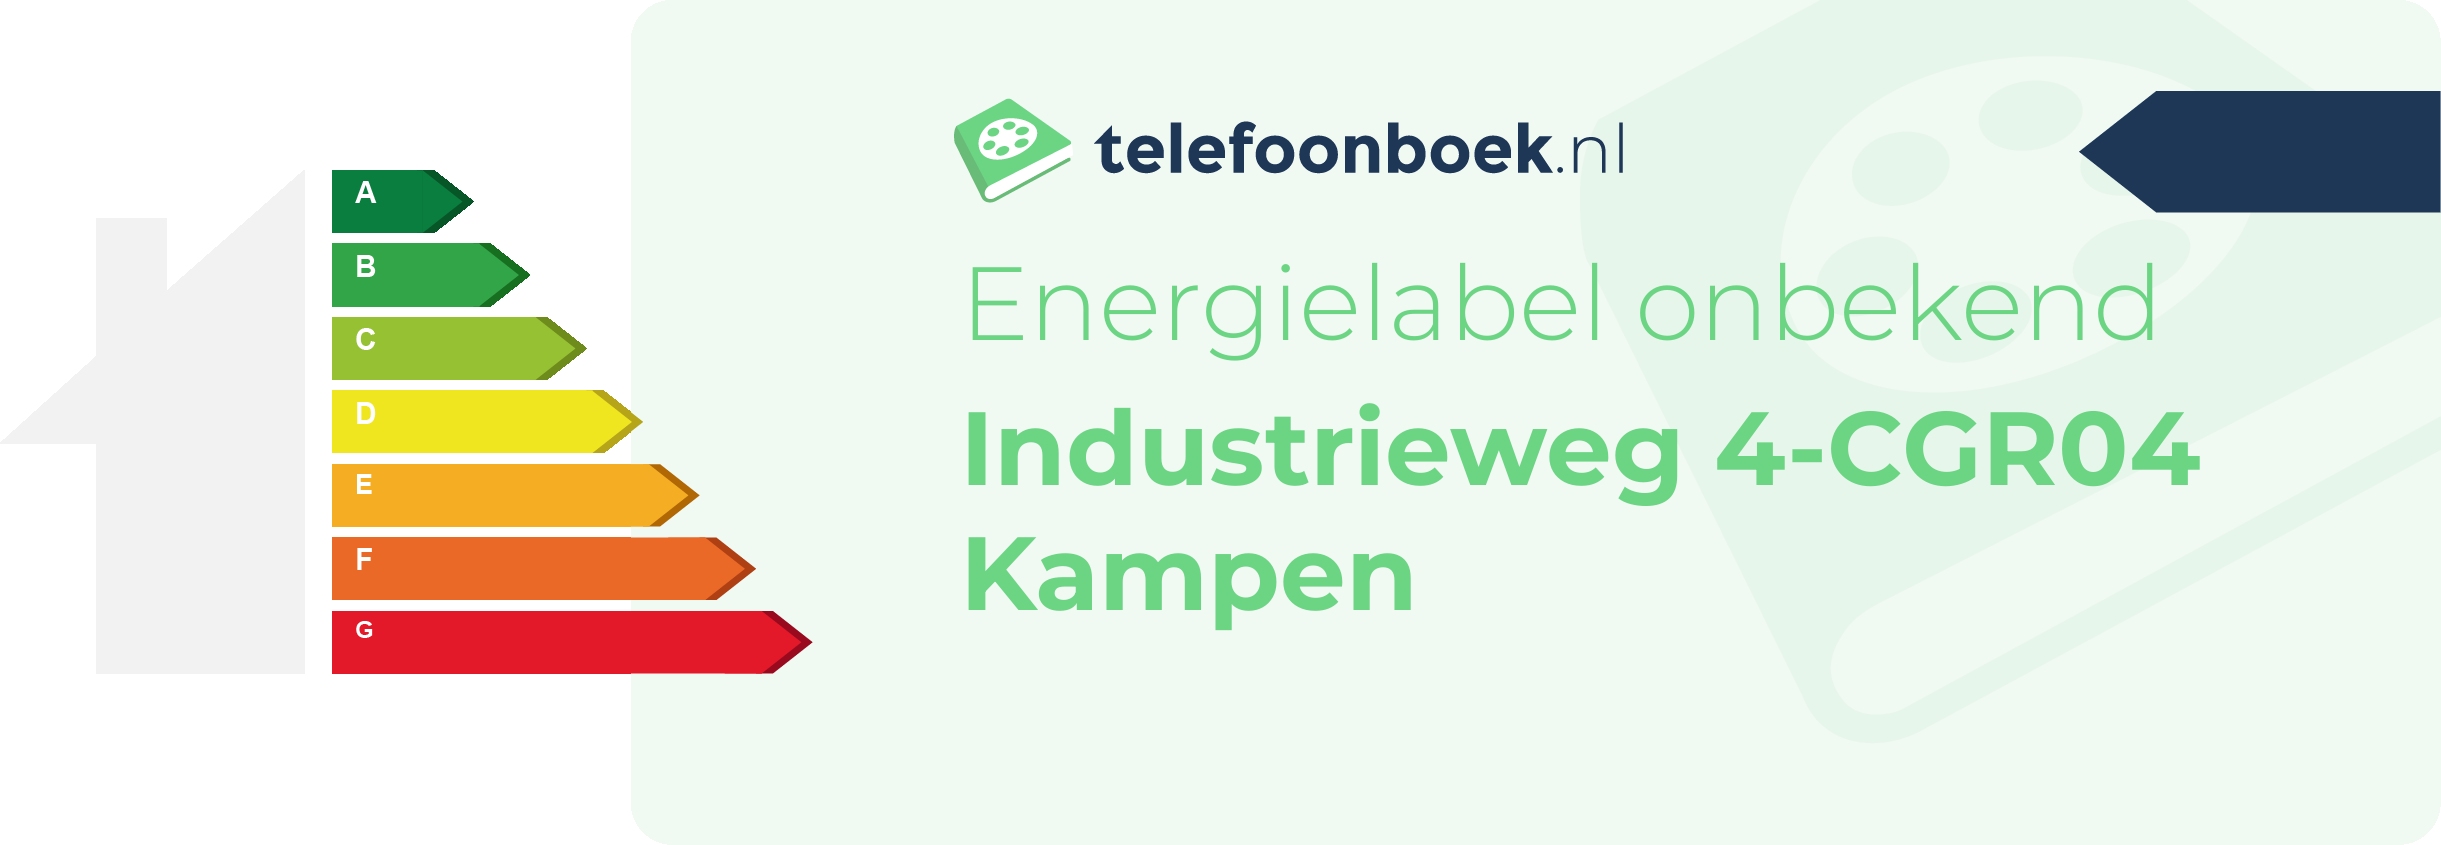 Energielabel Industrieweg 4-CGR04 Kampen